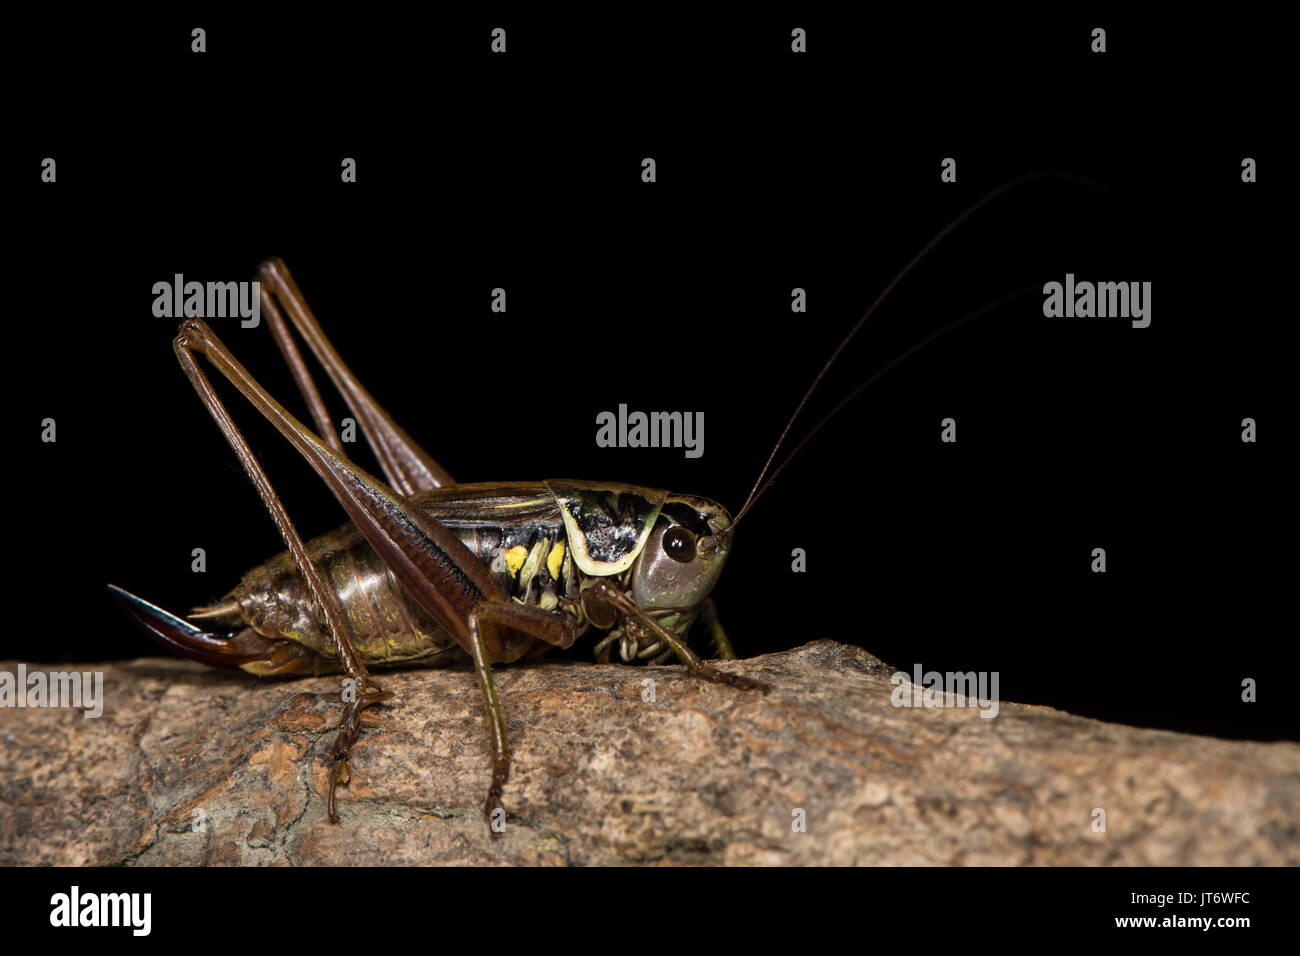 Roesel's bush (Metrioptera roeselii cricket) contre la femelle adulte noir de la famille Tettigoniidae, l'ordre des orthoptères, contre le noir Banque D'Images